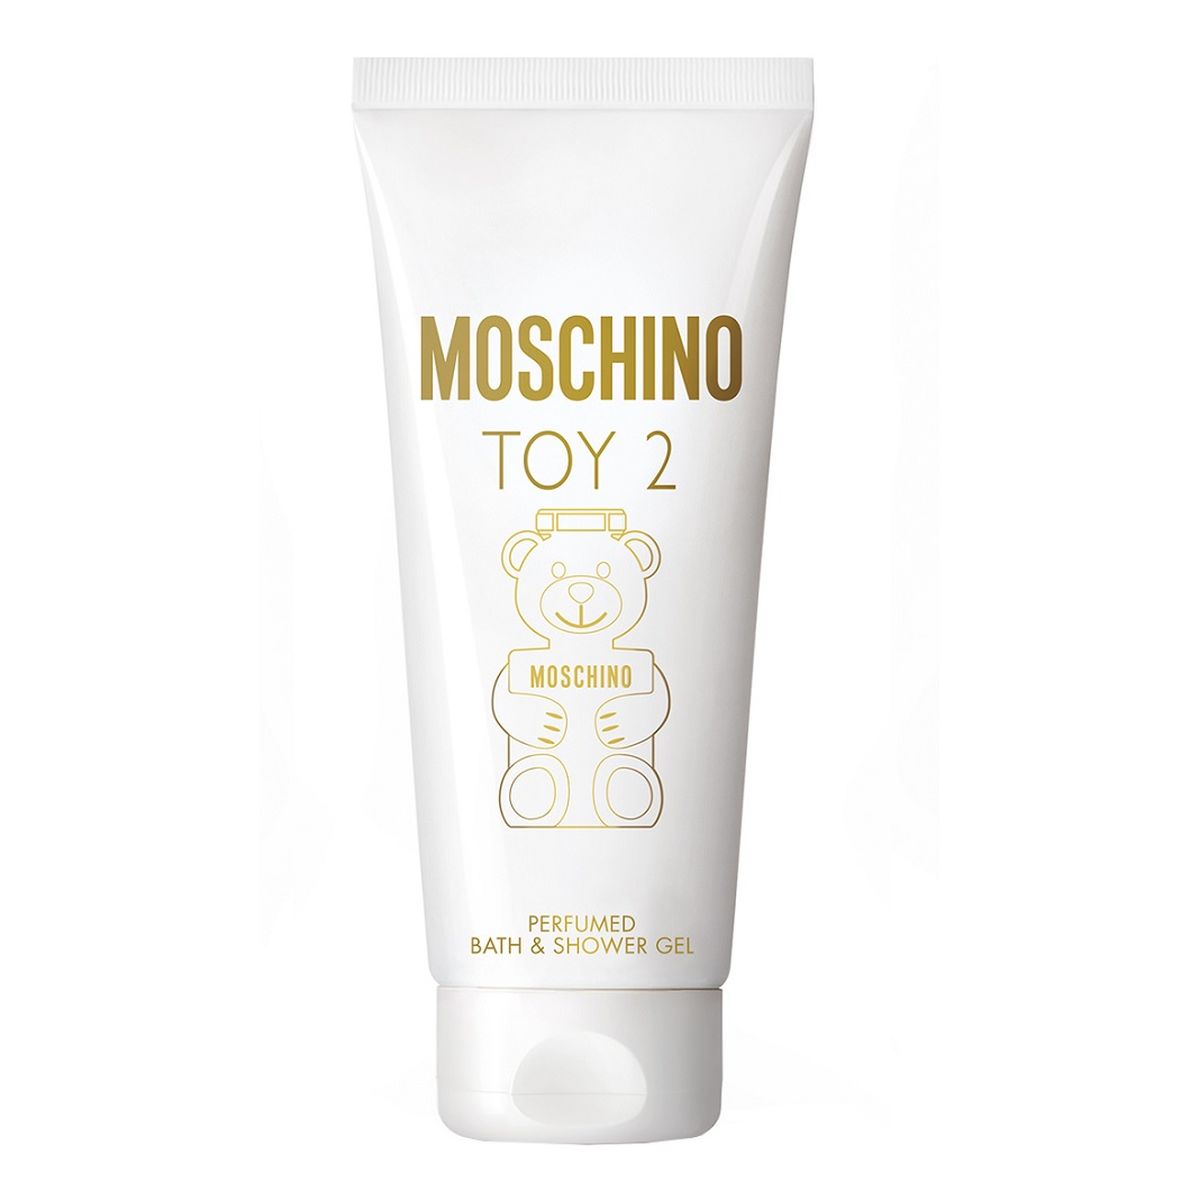 Moschino Toy 2 perfumowany Żel do kąpieli i pod prysznic 200ml